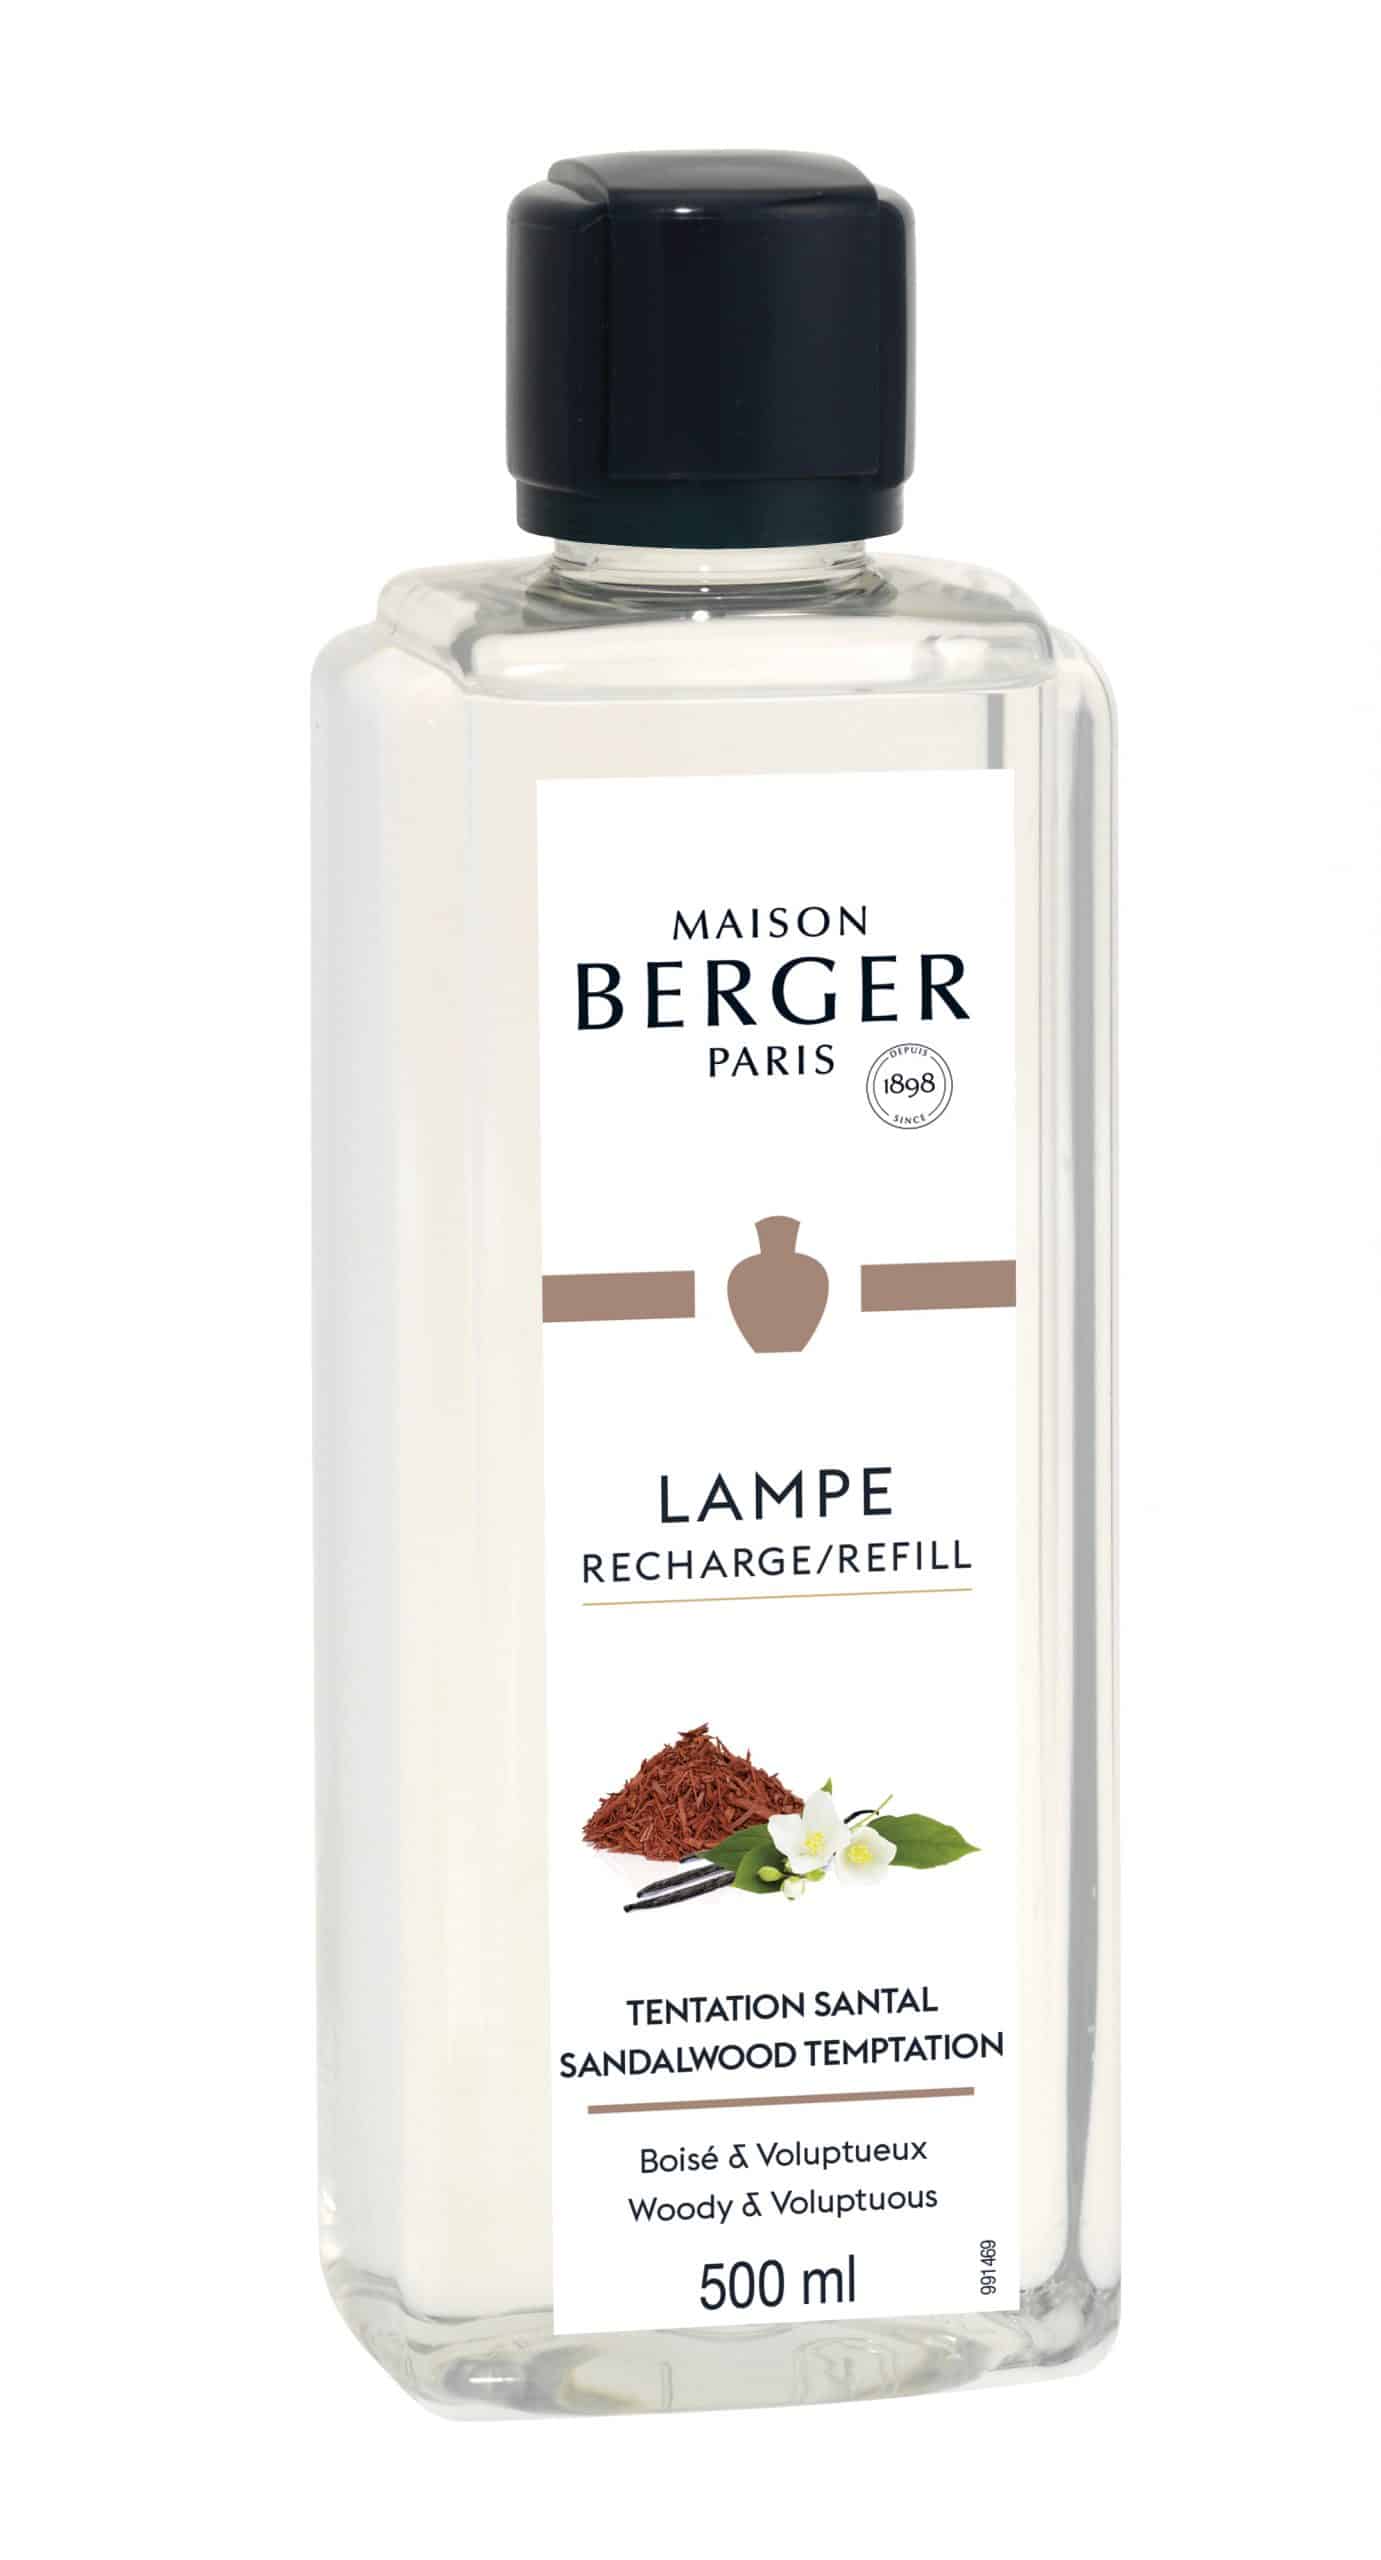 Maison Berger Paris - parfum Sandalwood Temptation - 500ml